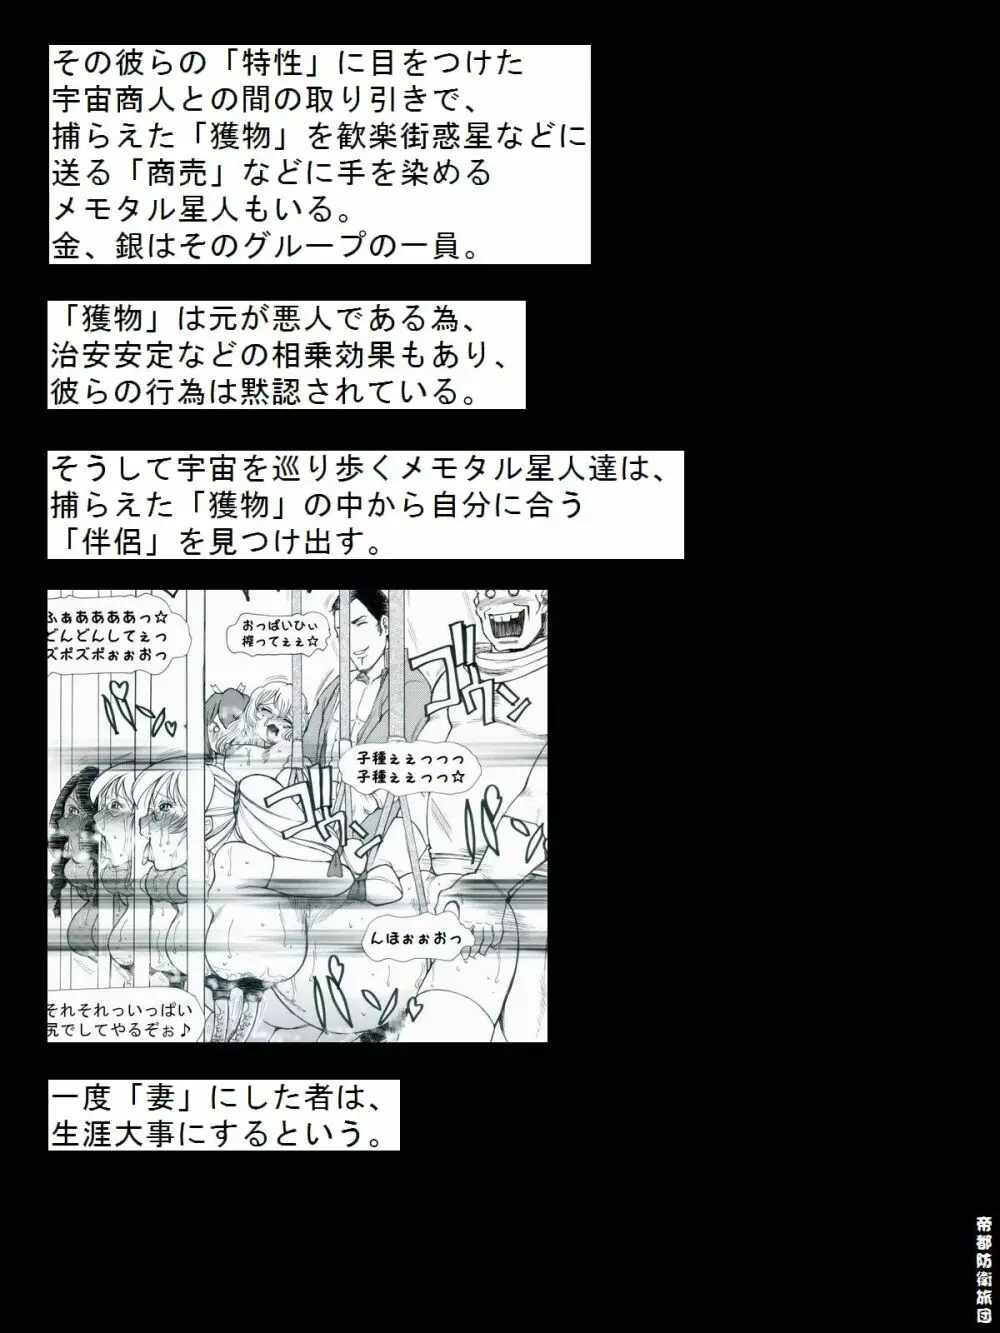 [帝都防衛旅団] RTKBOOK 9-3 「M○Xいぢり(3) 『PANPAN-MAN』」 29ページ